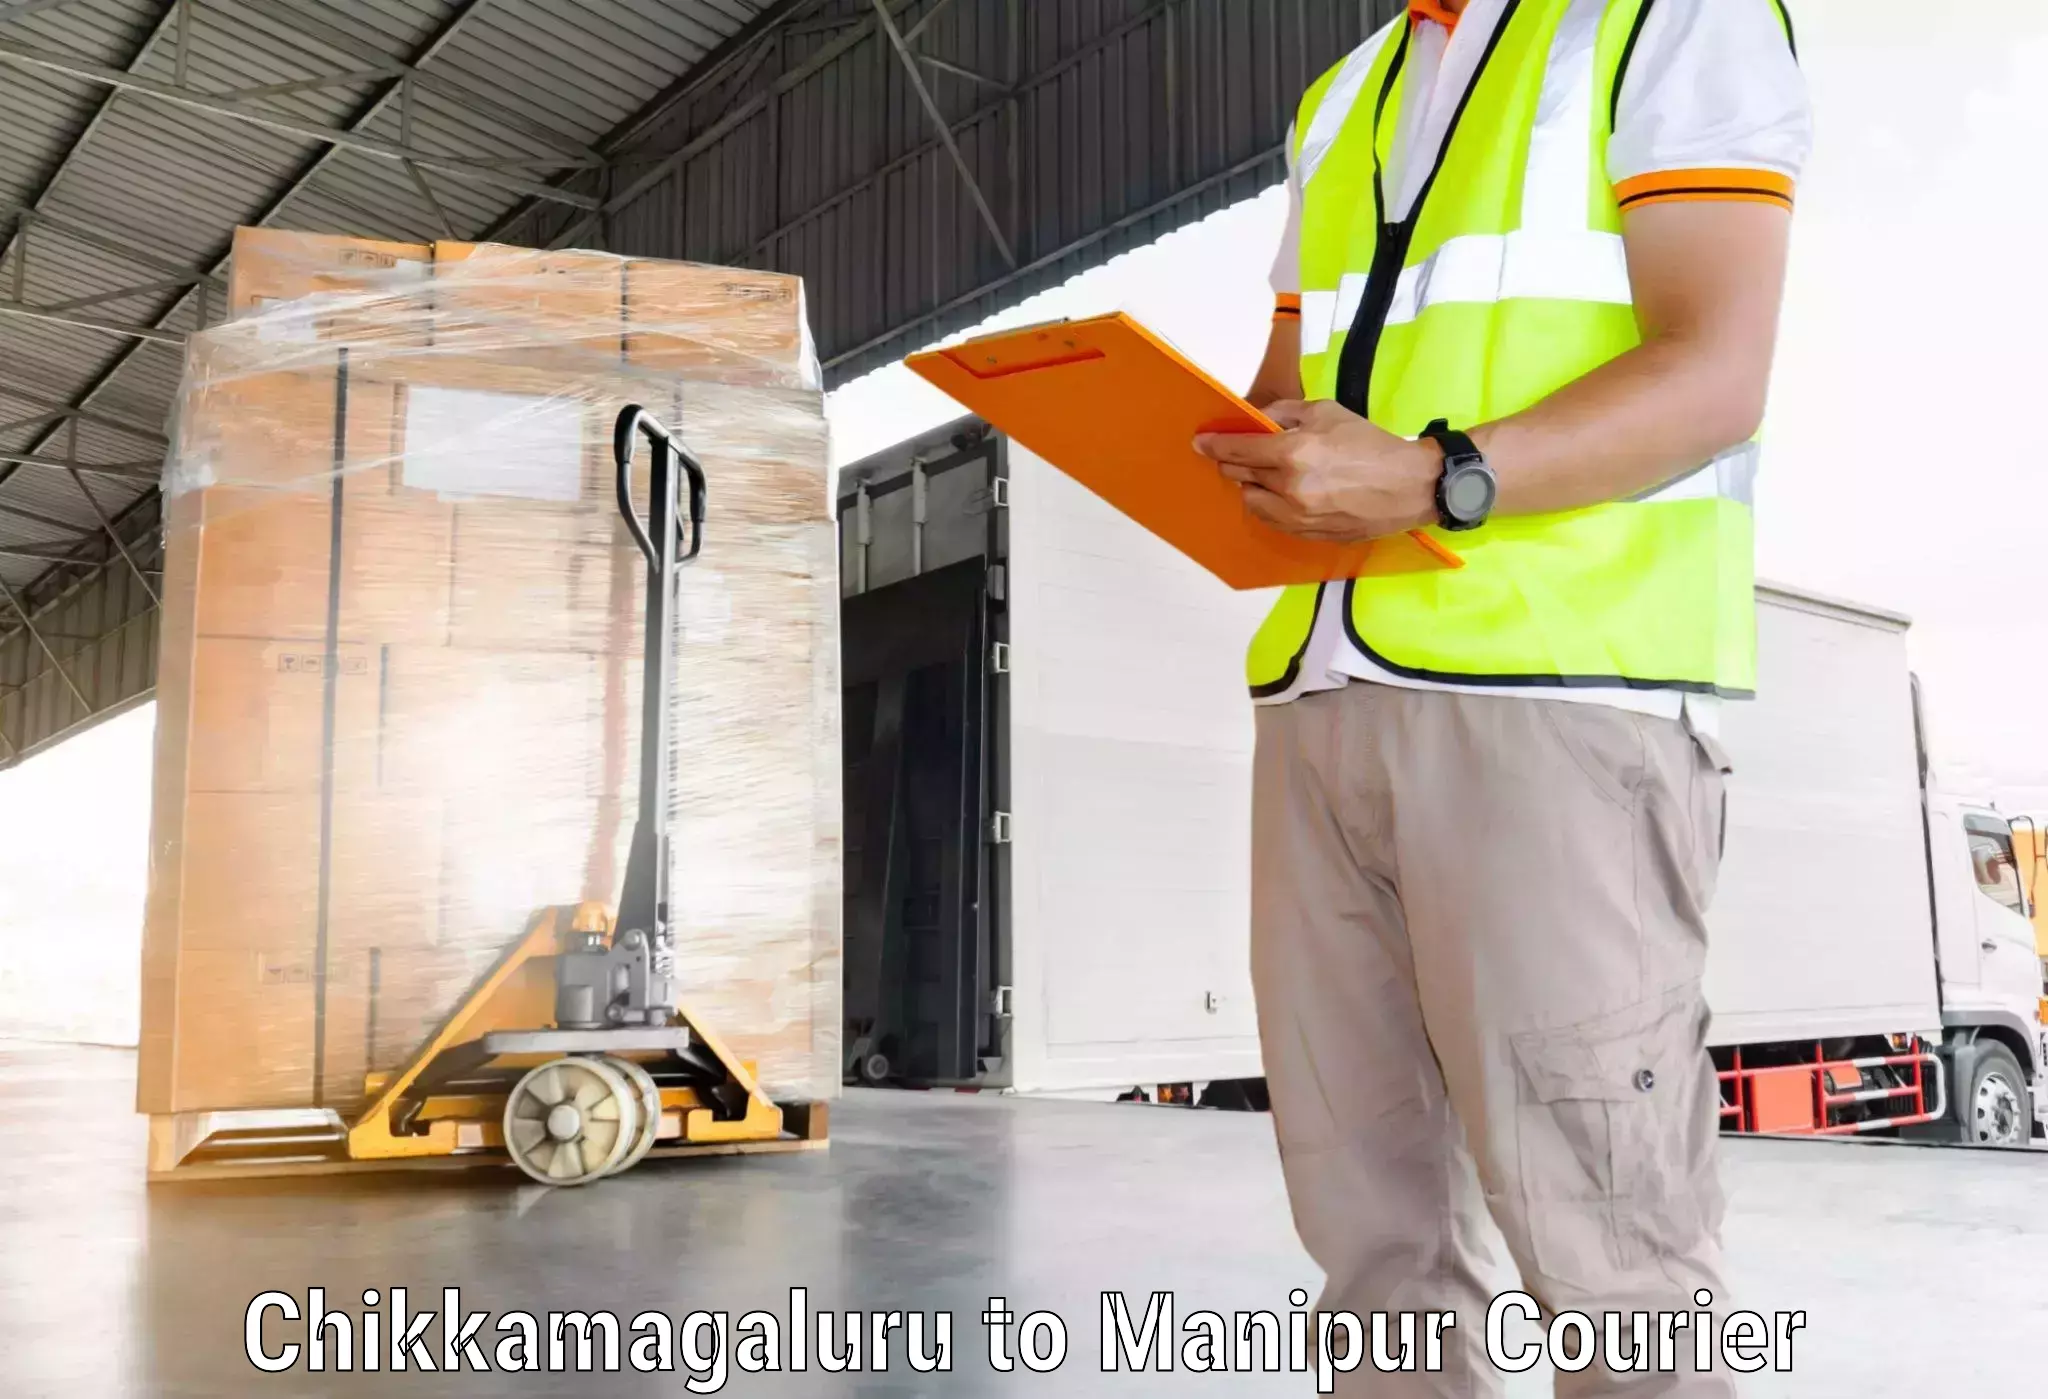 Express logistics providers Chikkamagaluru to Kanti